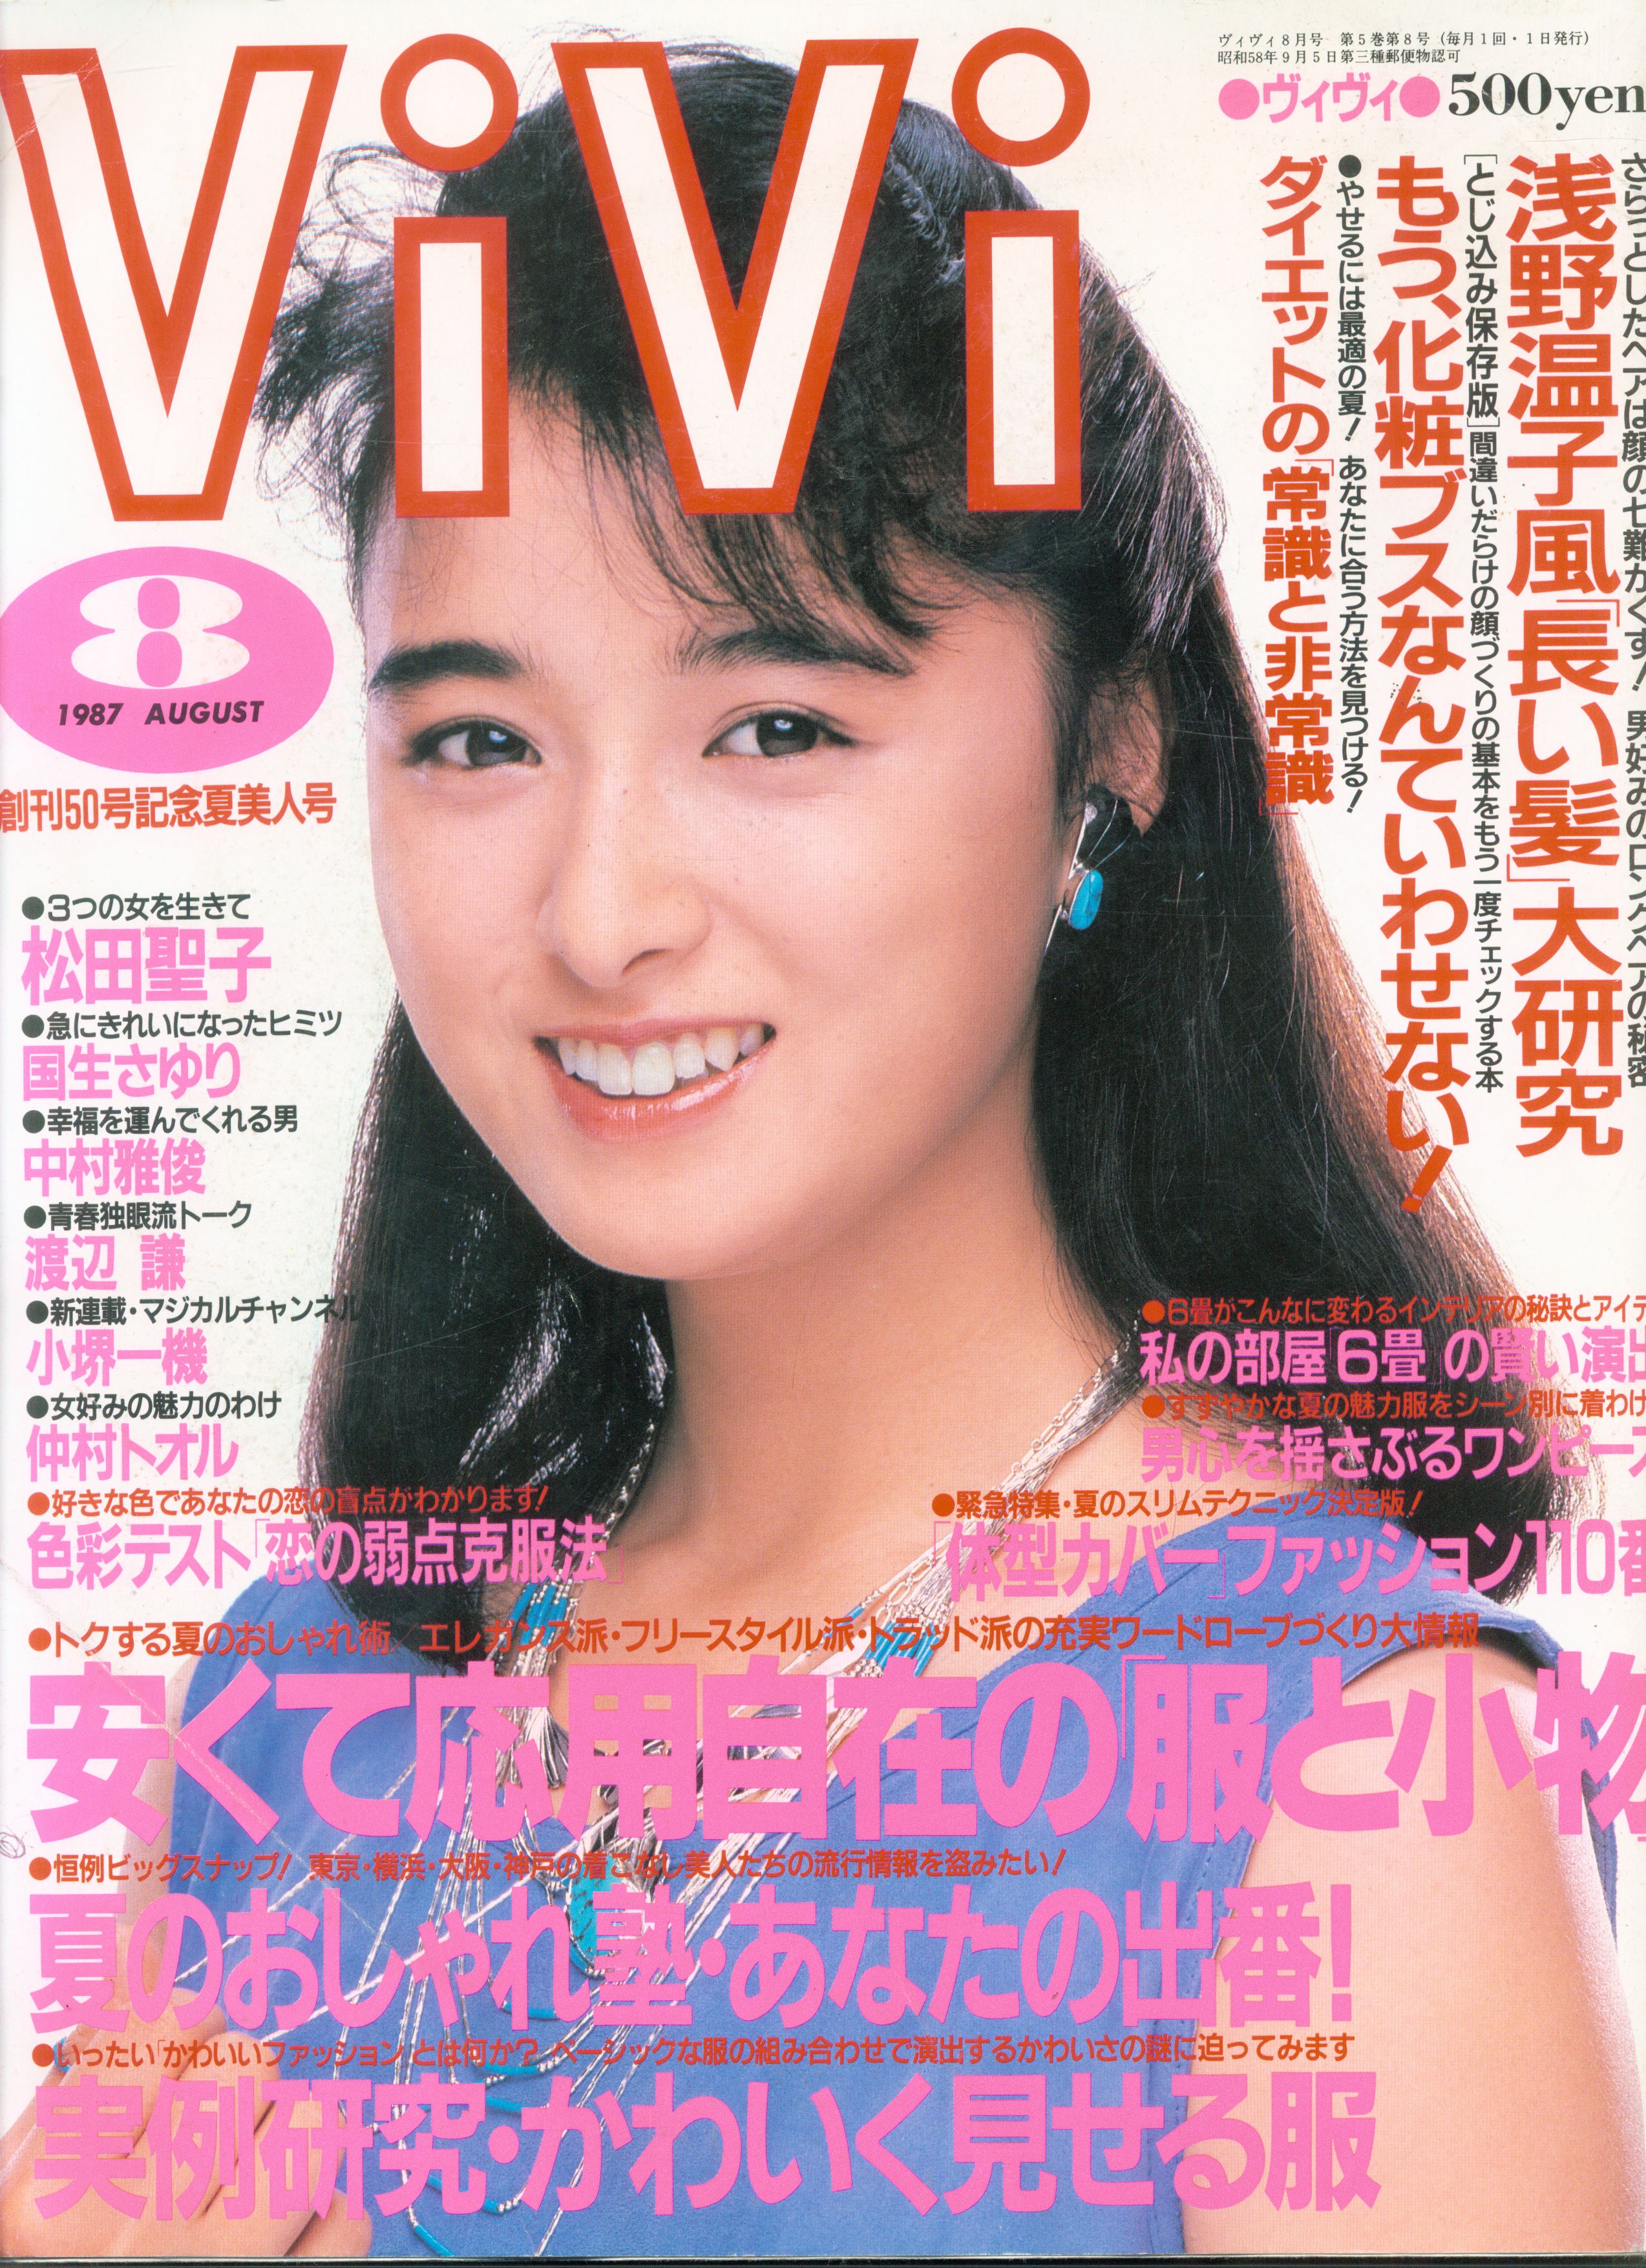 まんだらけ通販 講談社 Vivi 1987年8月号 渋谷店からの出品